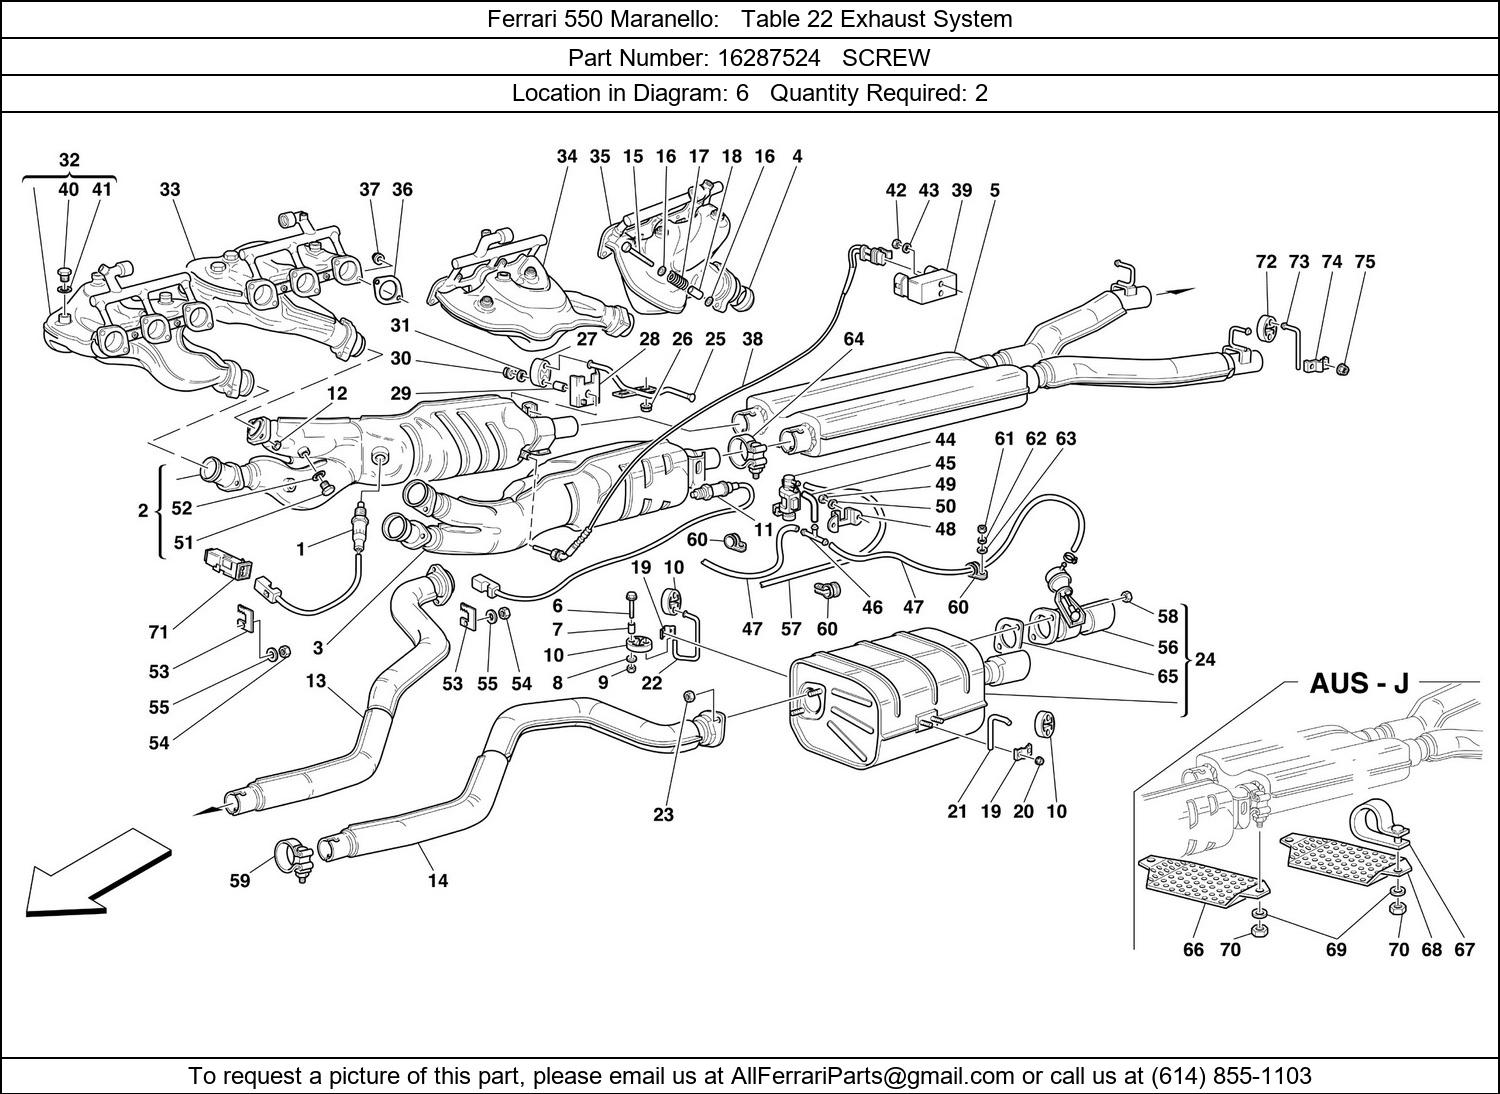 Ferrari Part 16287524